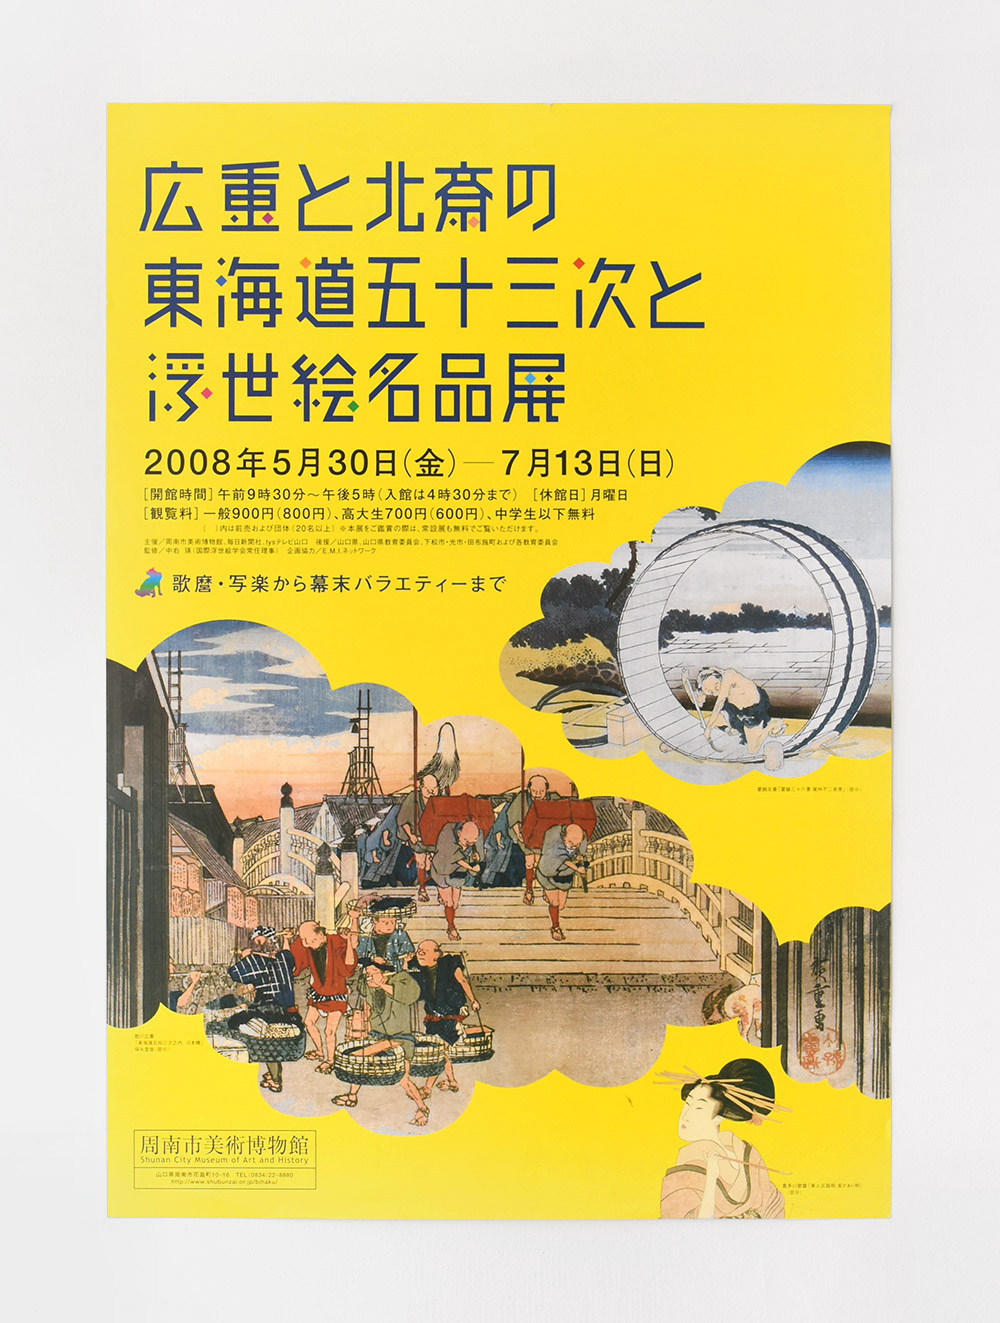 周南市美術博物館　広重と北斎の東海道五十三次と浮世絵名品展　ポスターデザイン